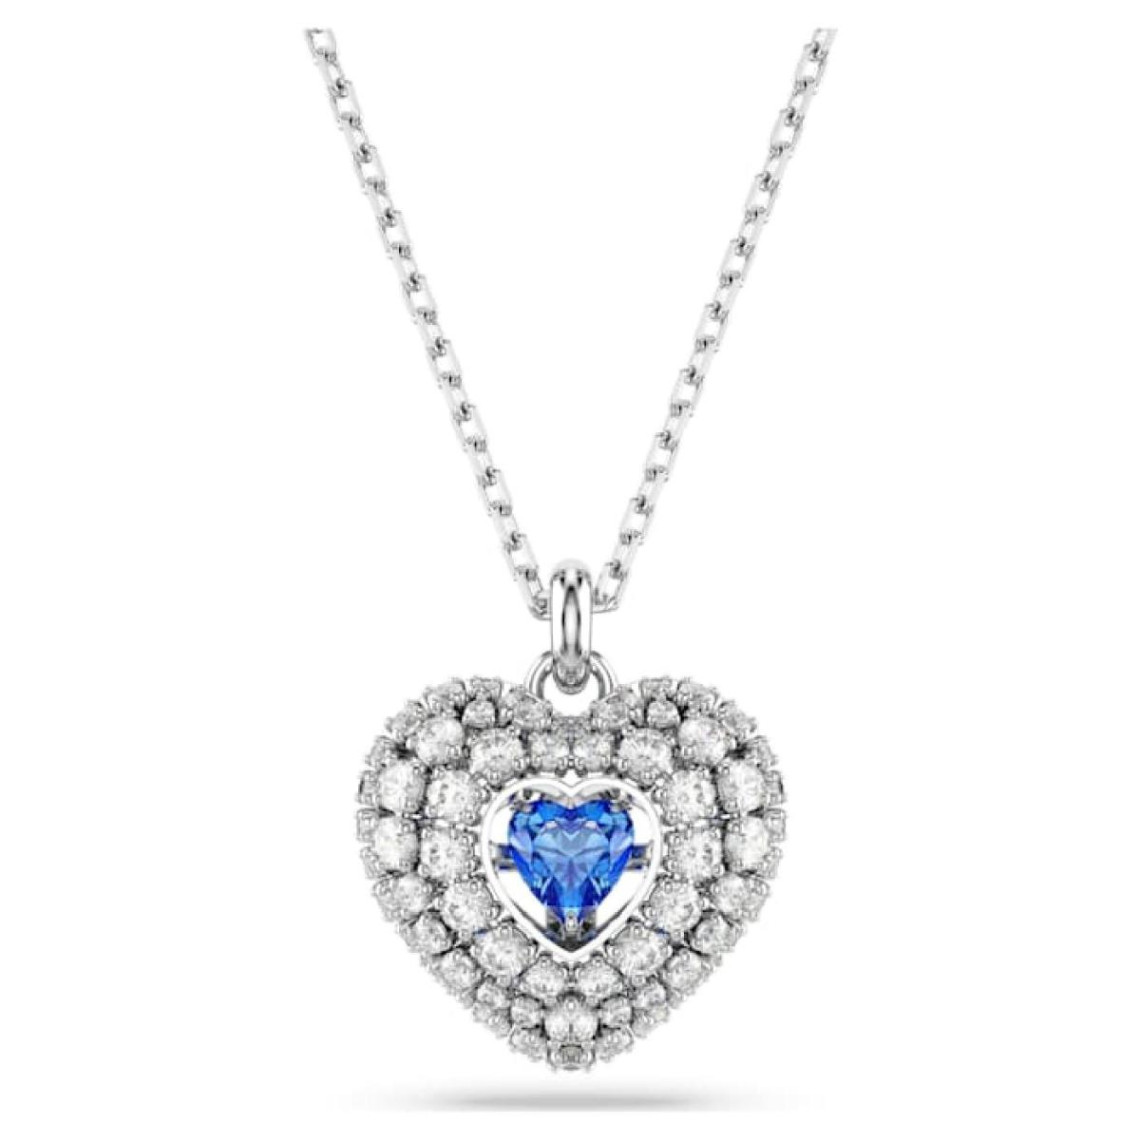 Collier Femme Swarovski Hyperbola Heart - 5680403 bleu,argent